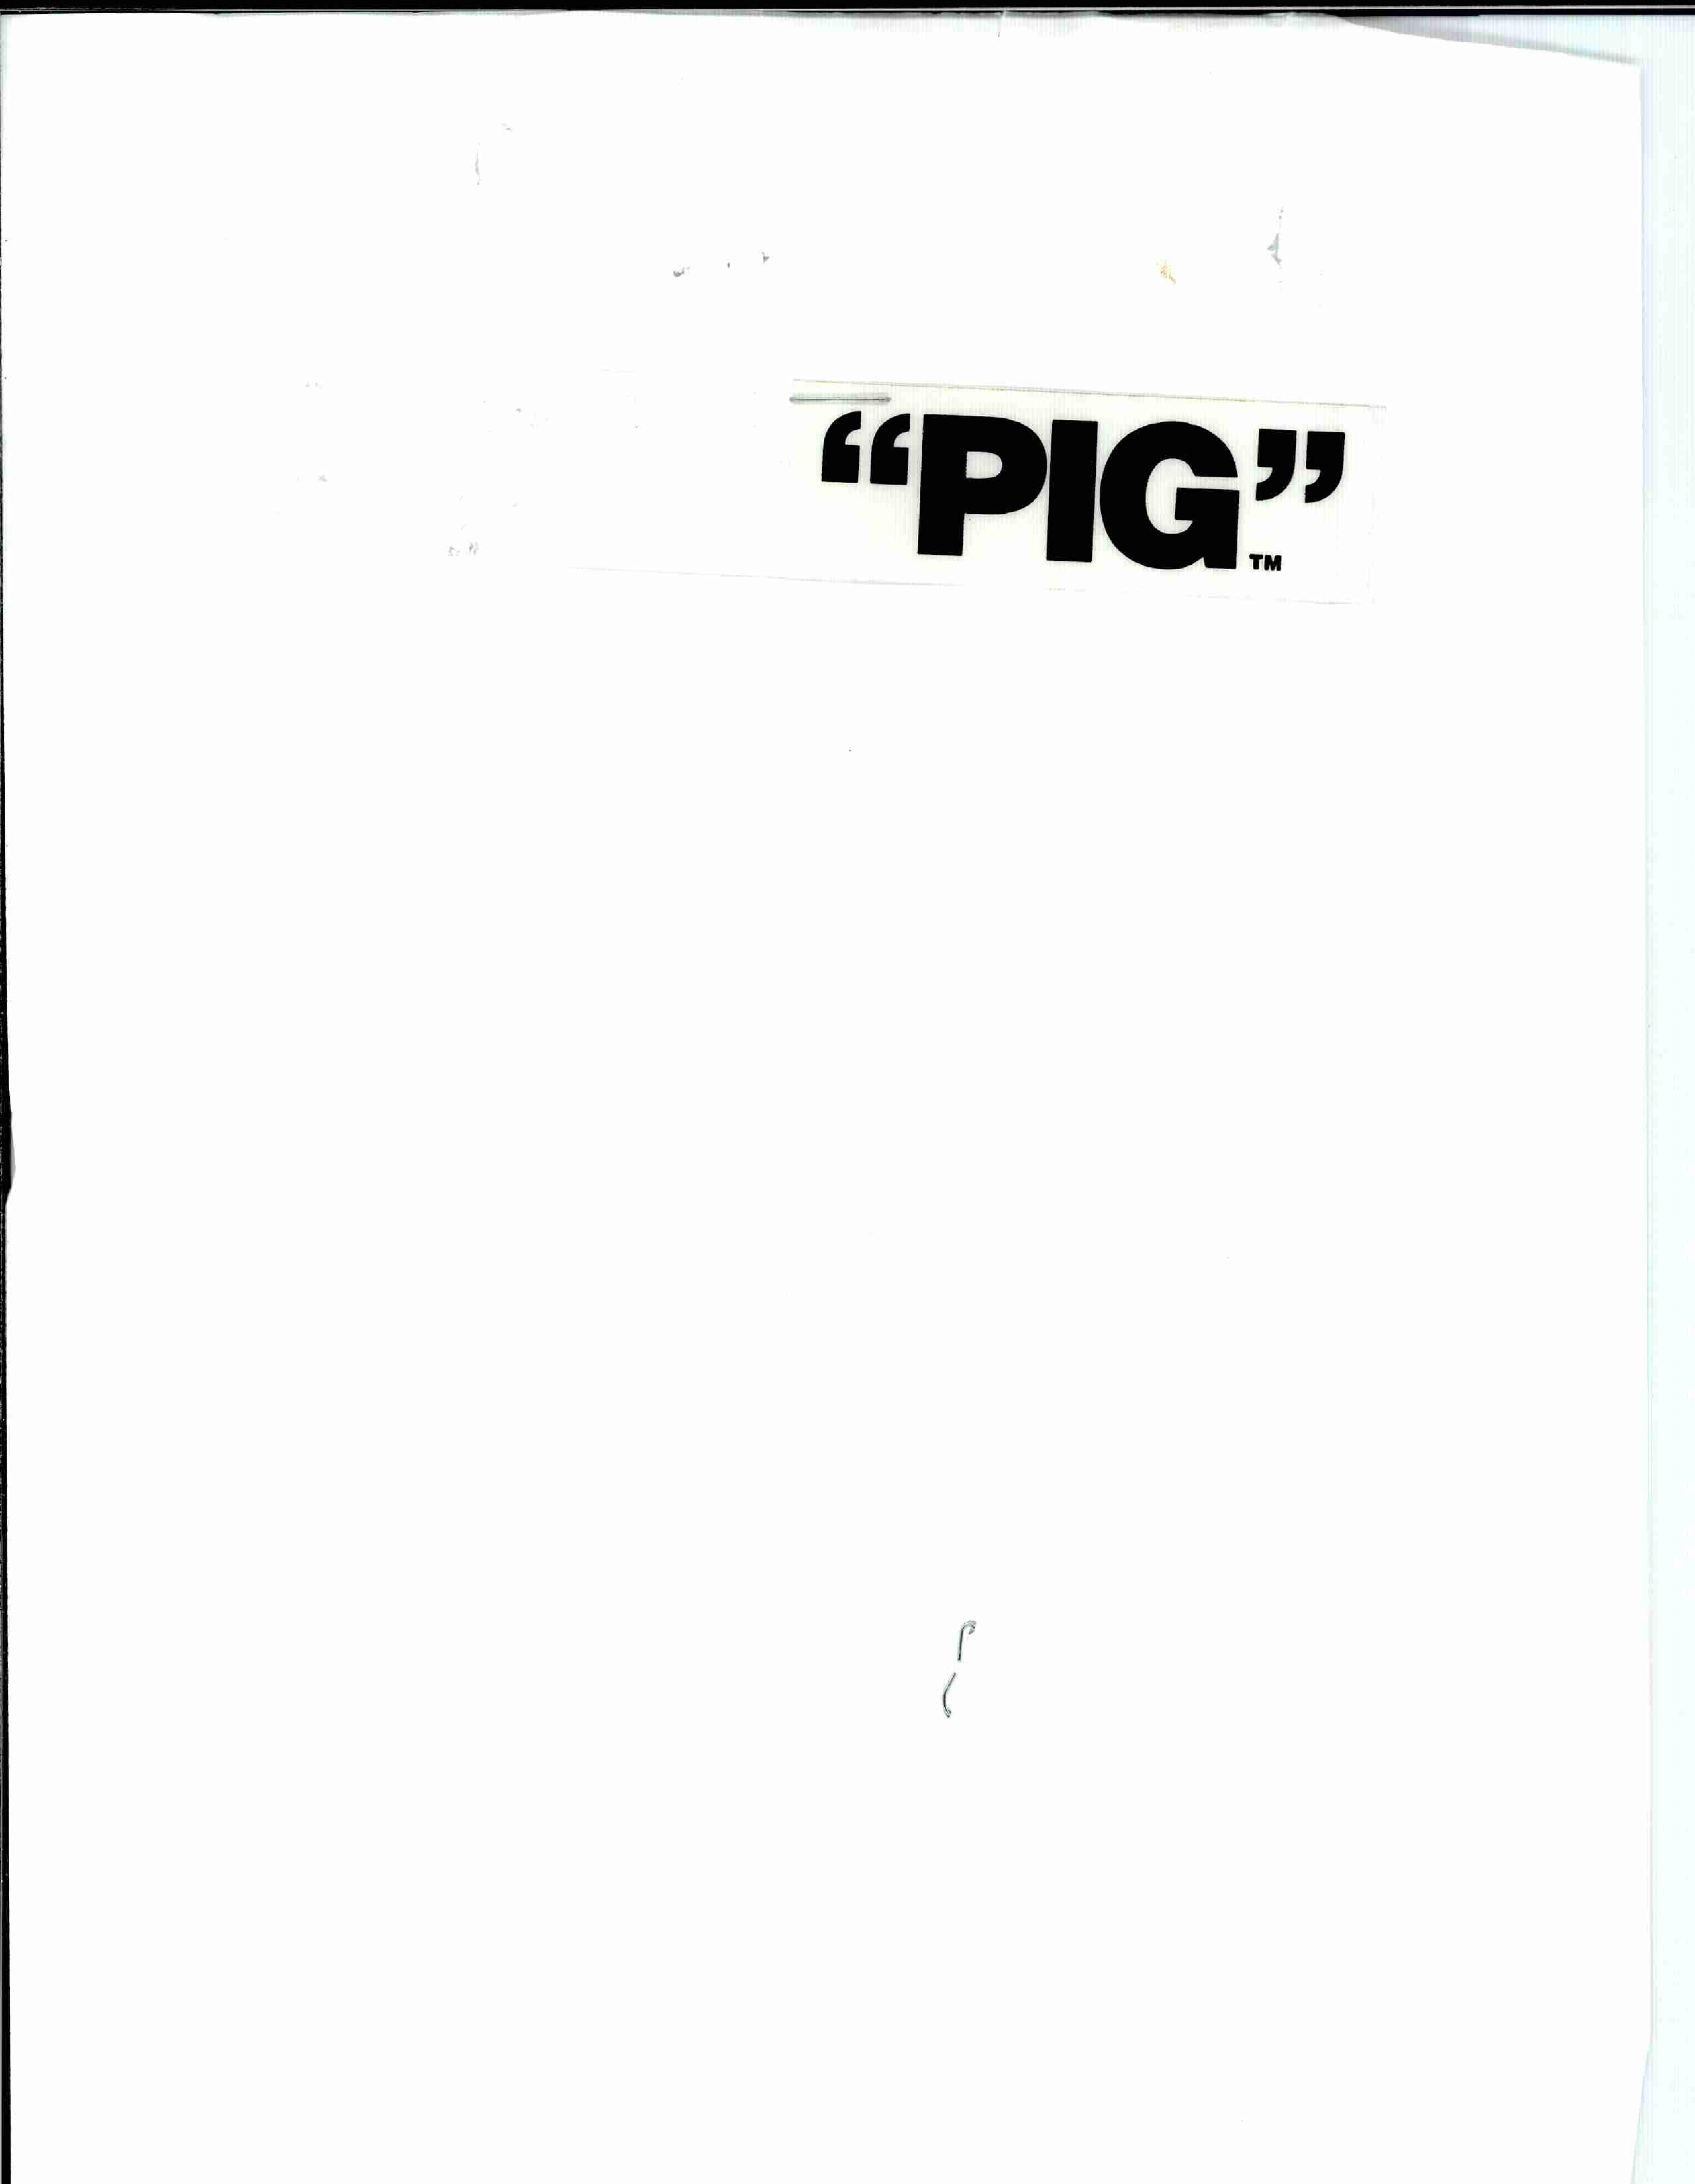 Trademark Logo "PIG"